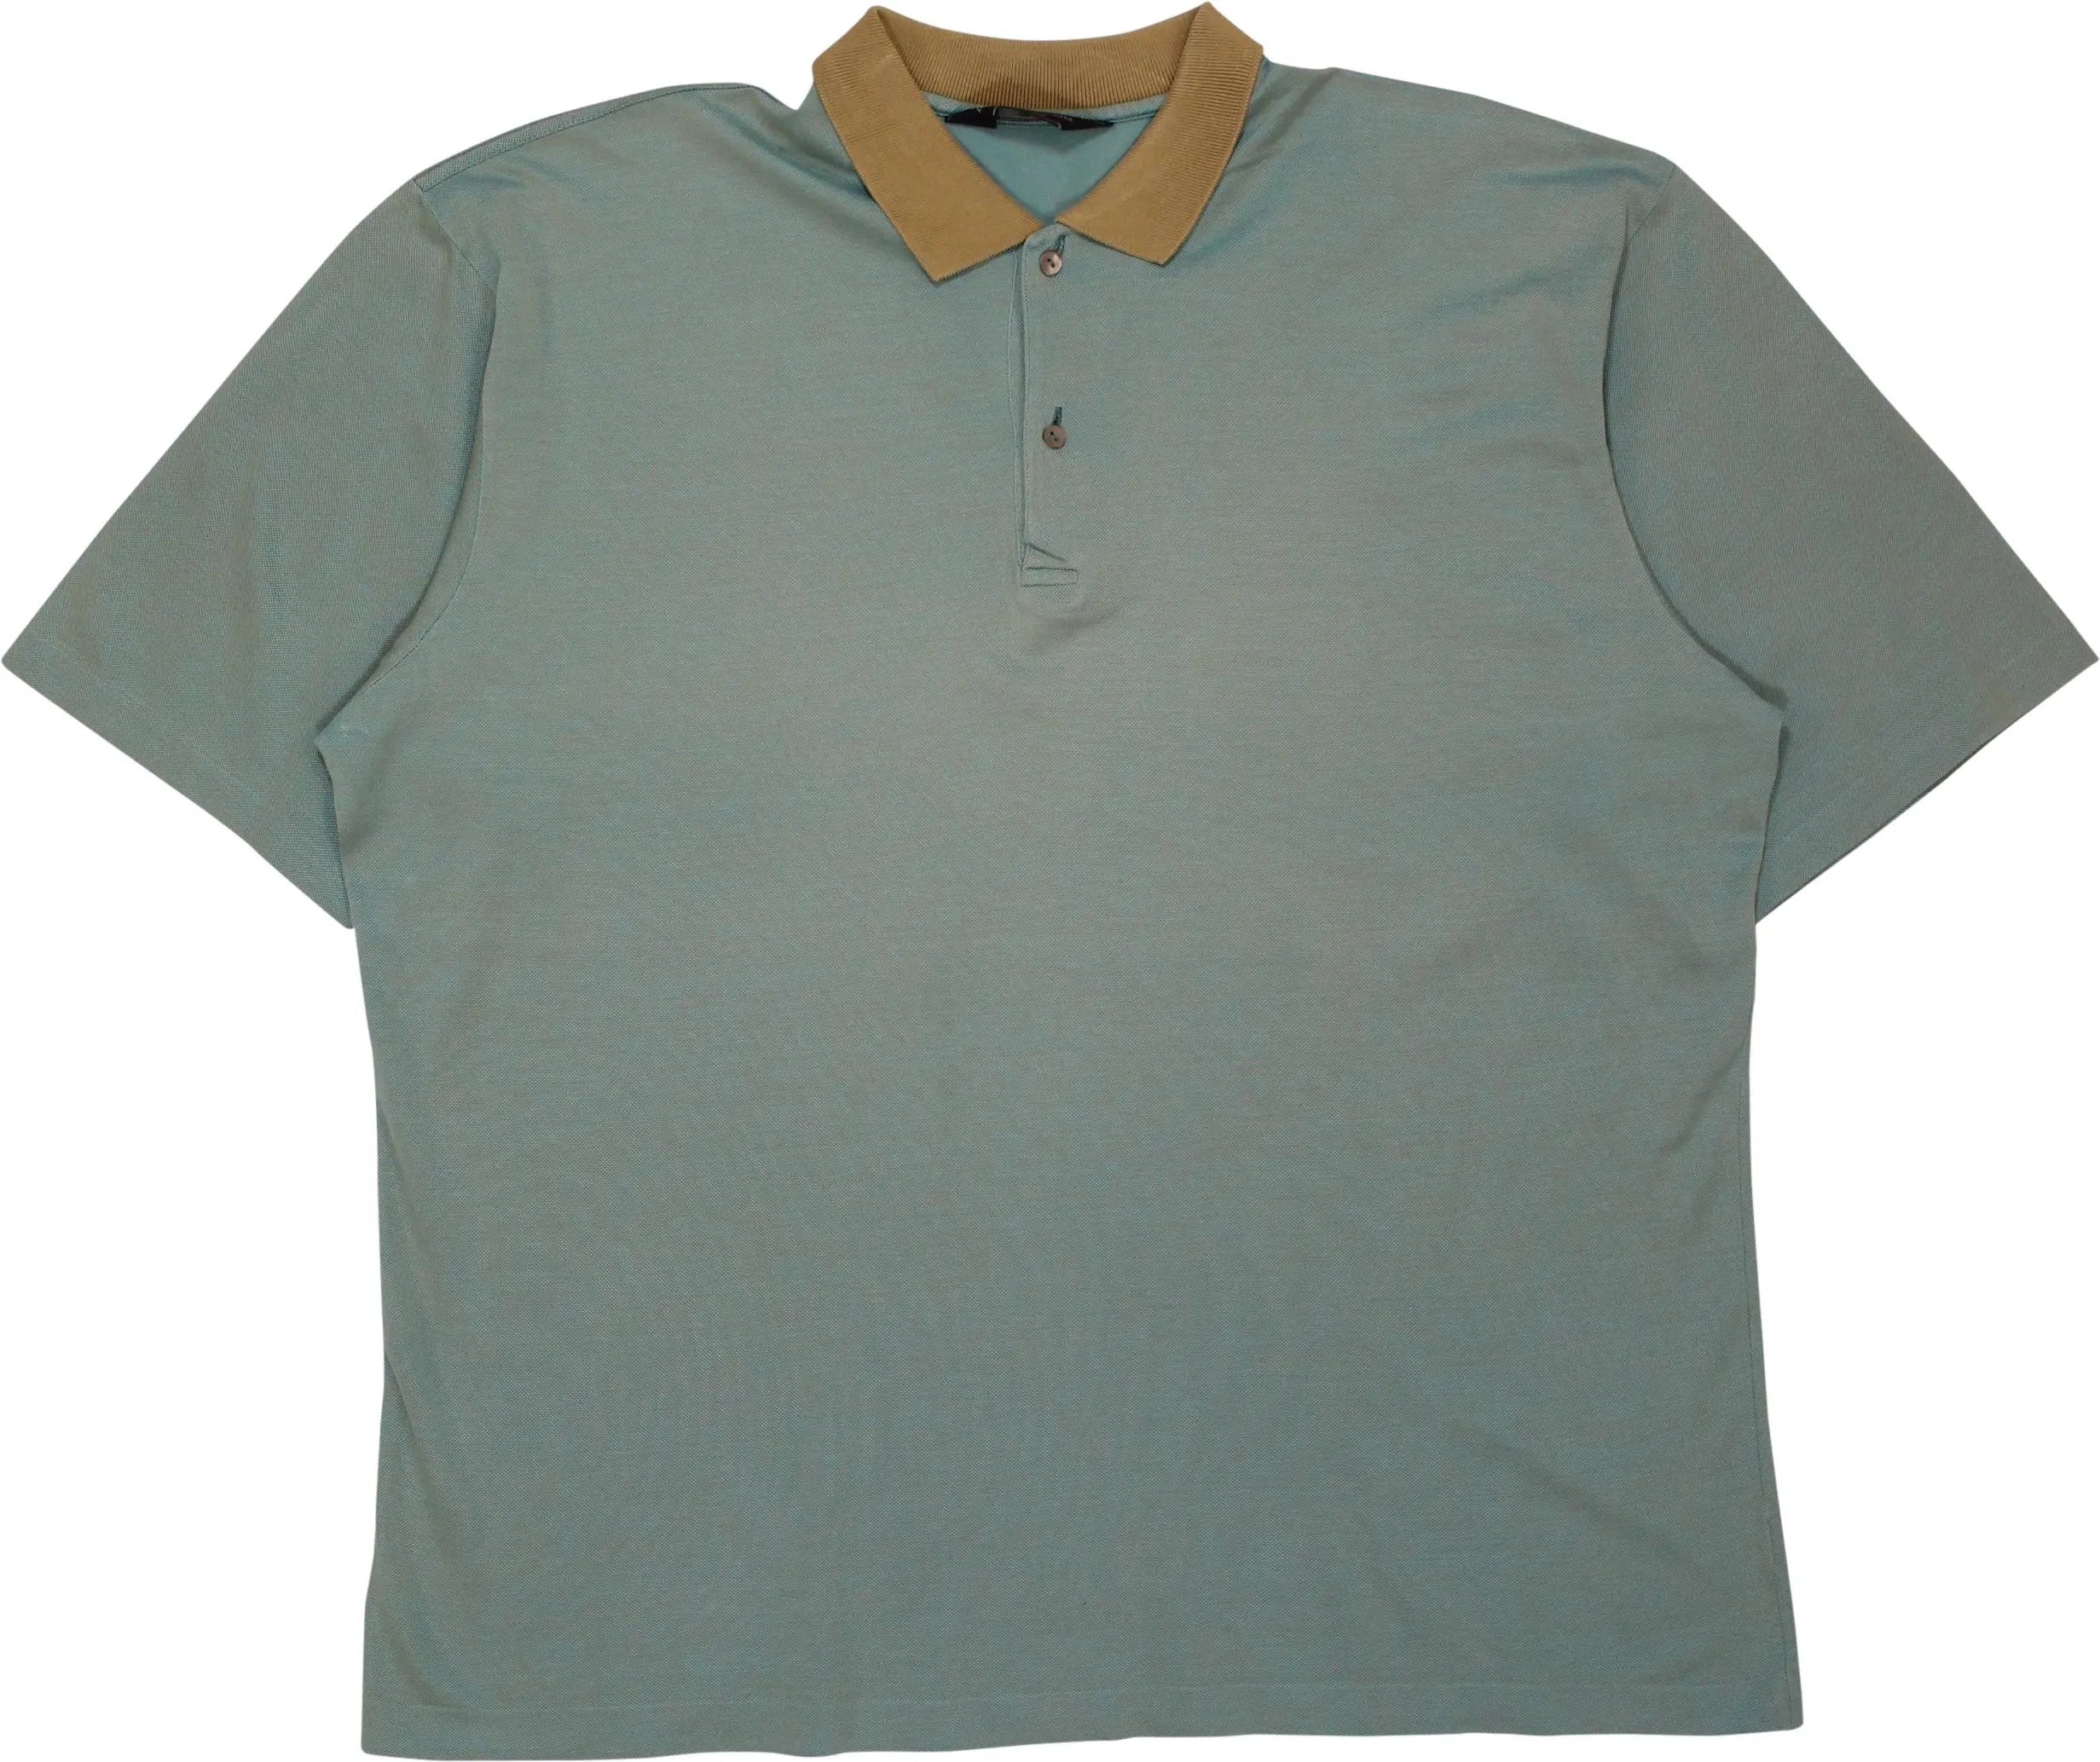 Ermengildo Zegna - Green Polo Shirt by Ermengildo Zegna- ThriftTale.com - Vintage and second handclothing